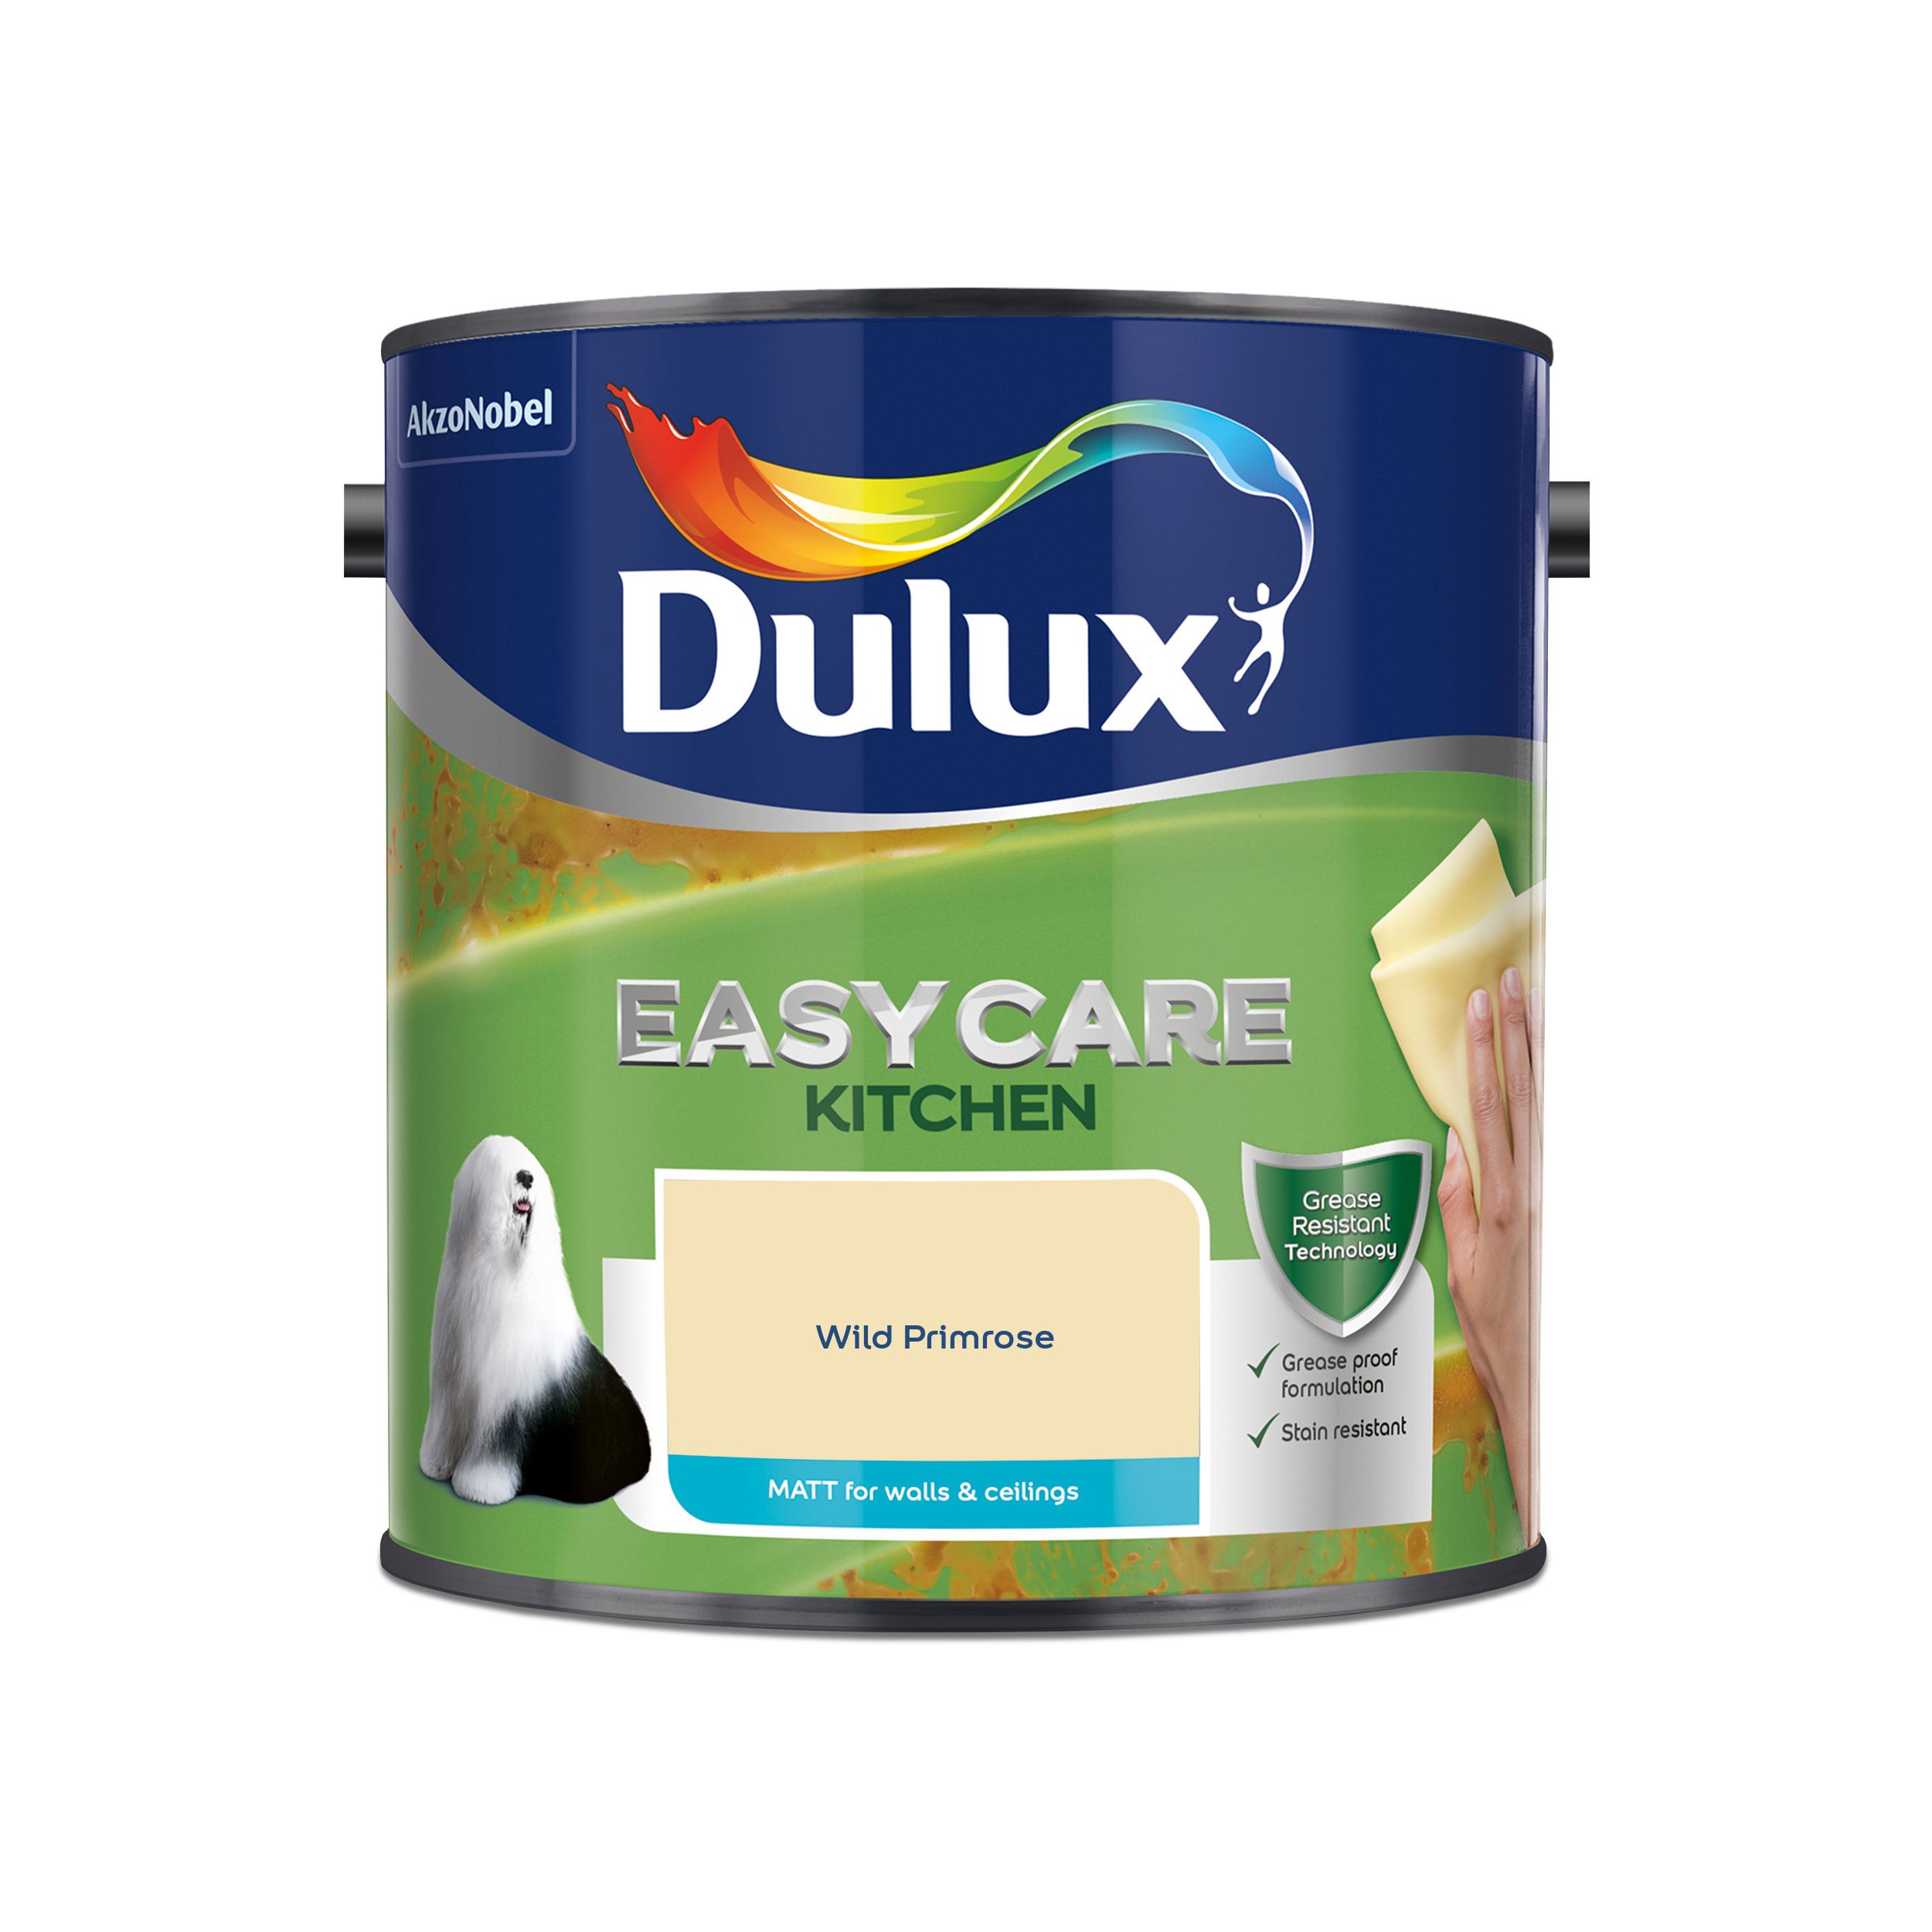 Dulux Easycare Wild primrose Matt Emulsion paint, 2.5L